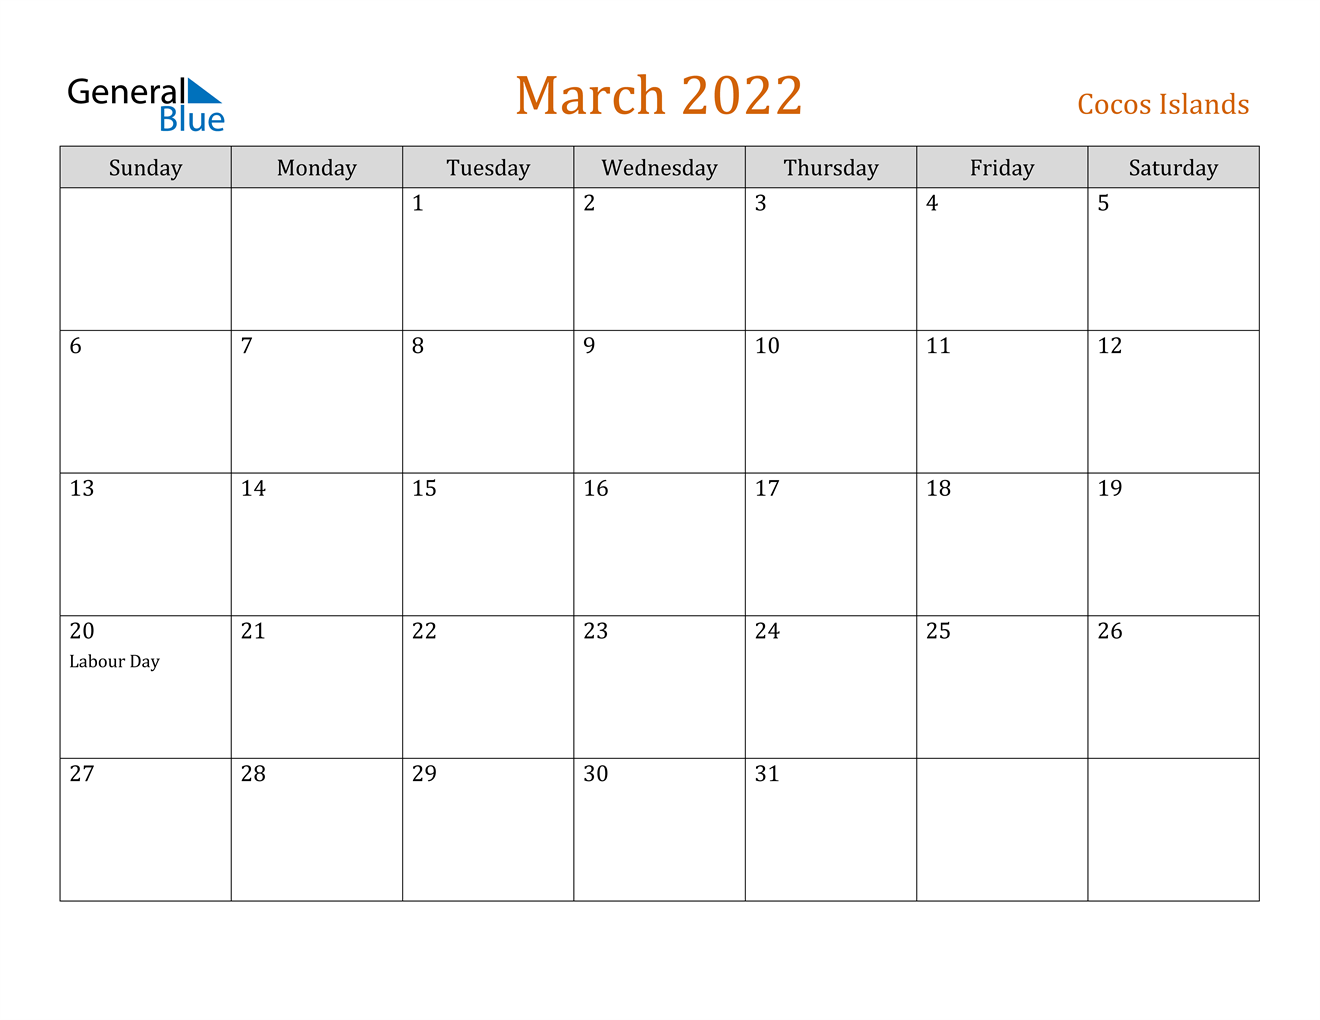 March 2022 Calendar - Cocos Islands